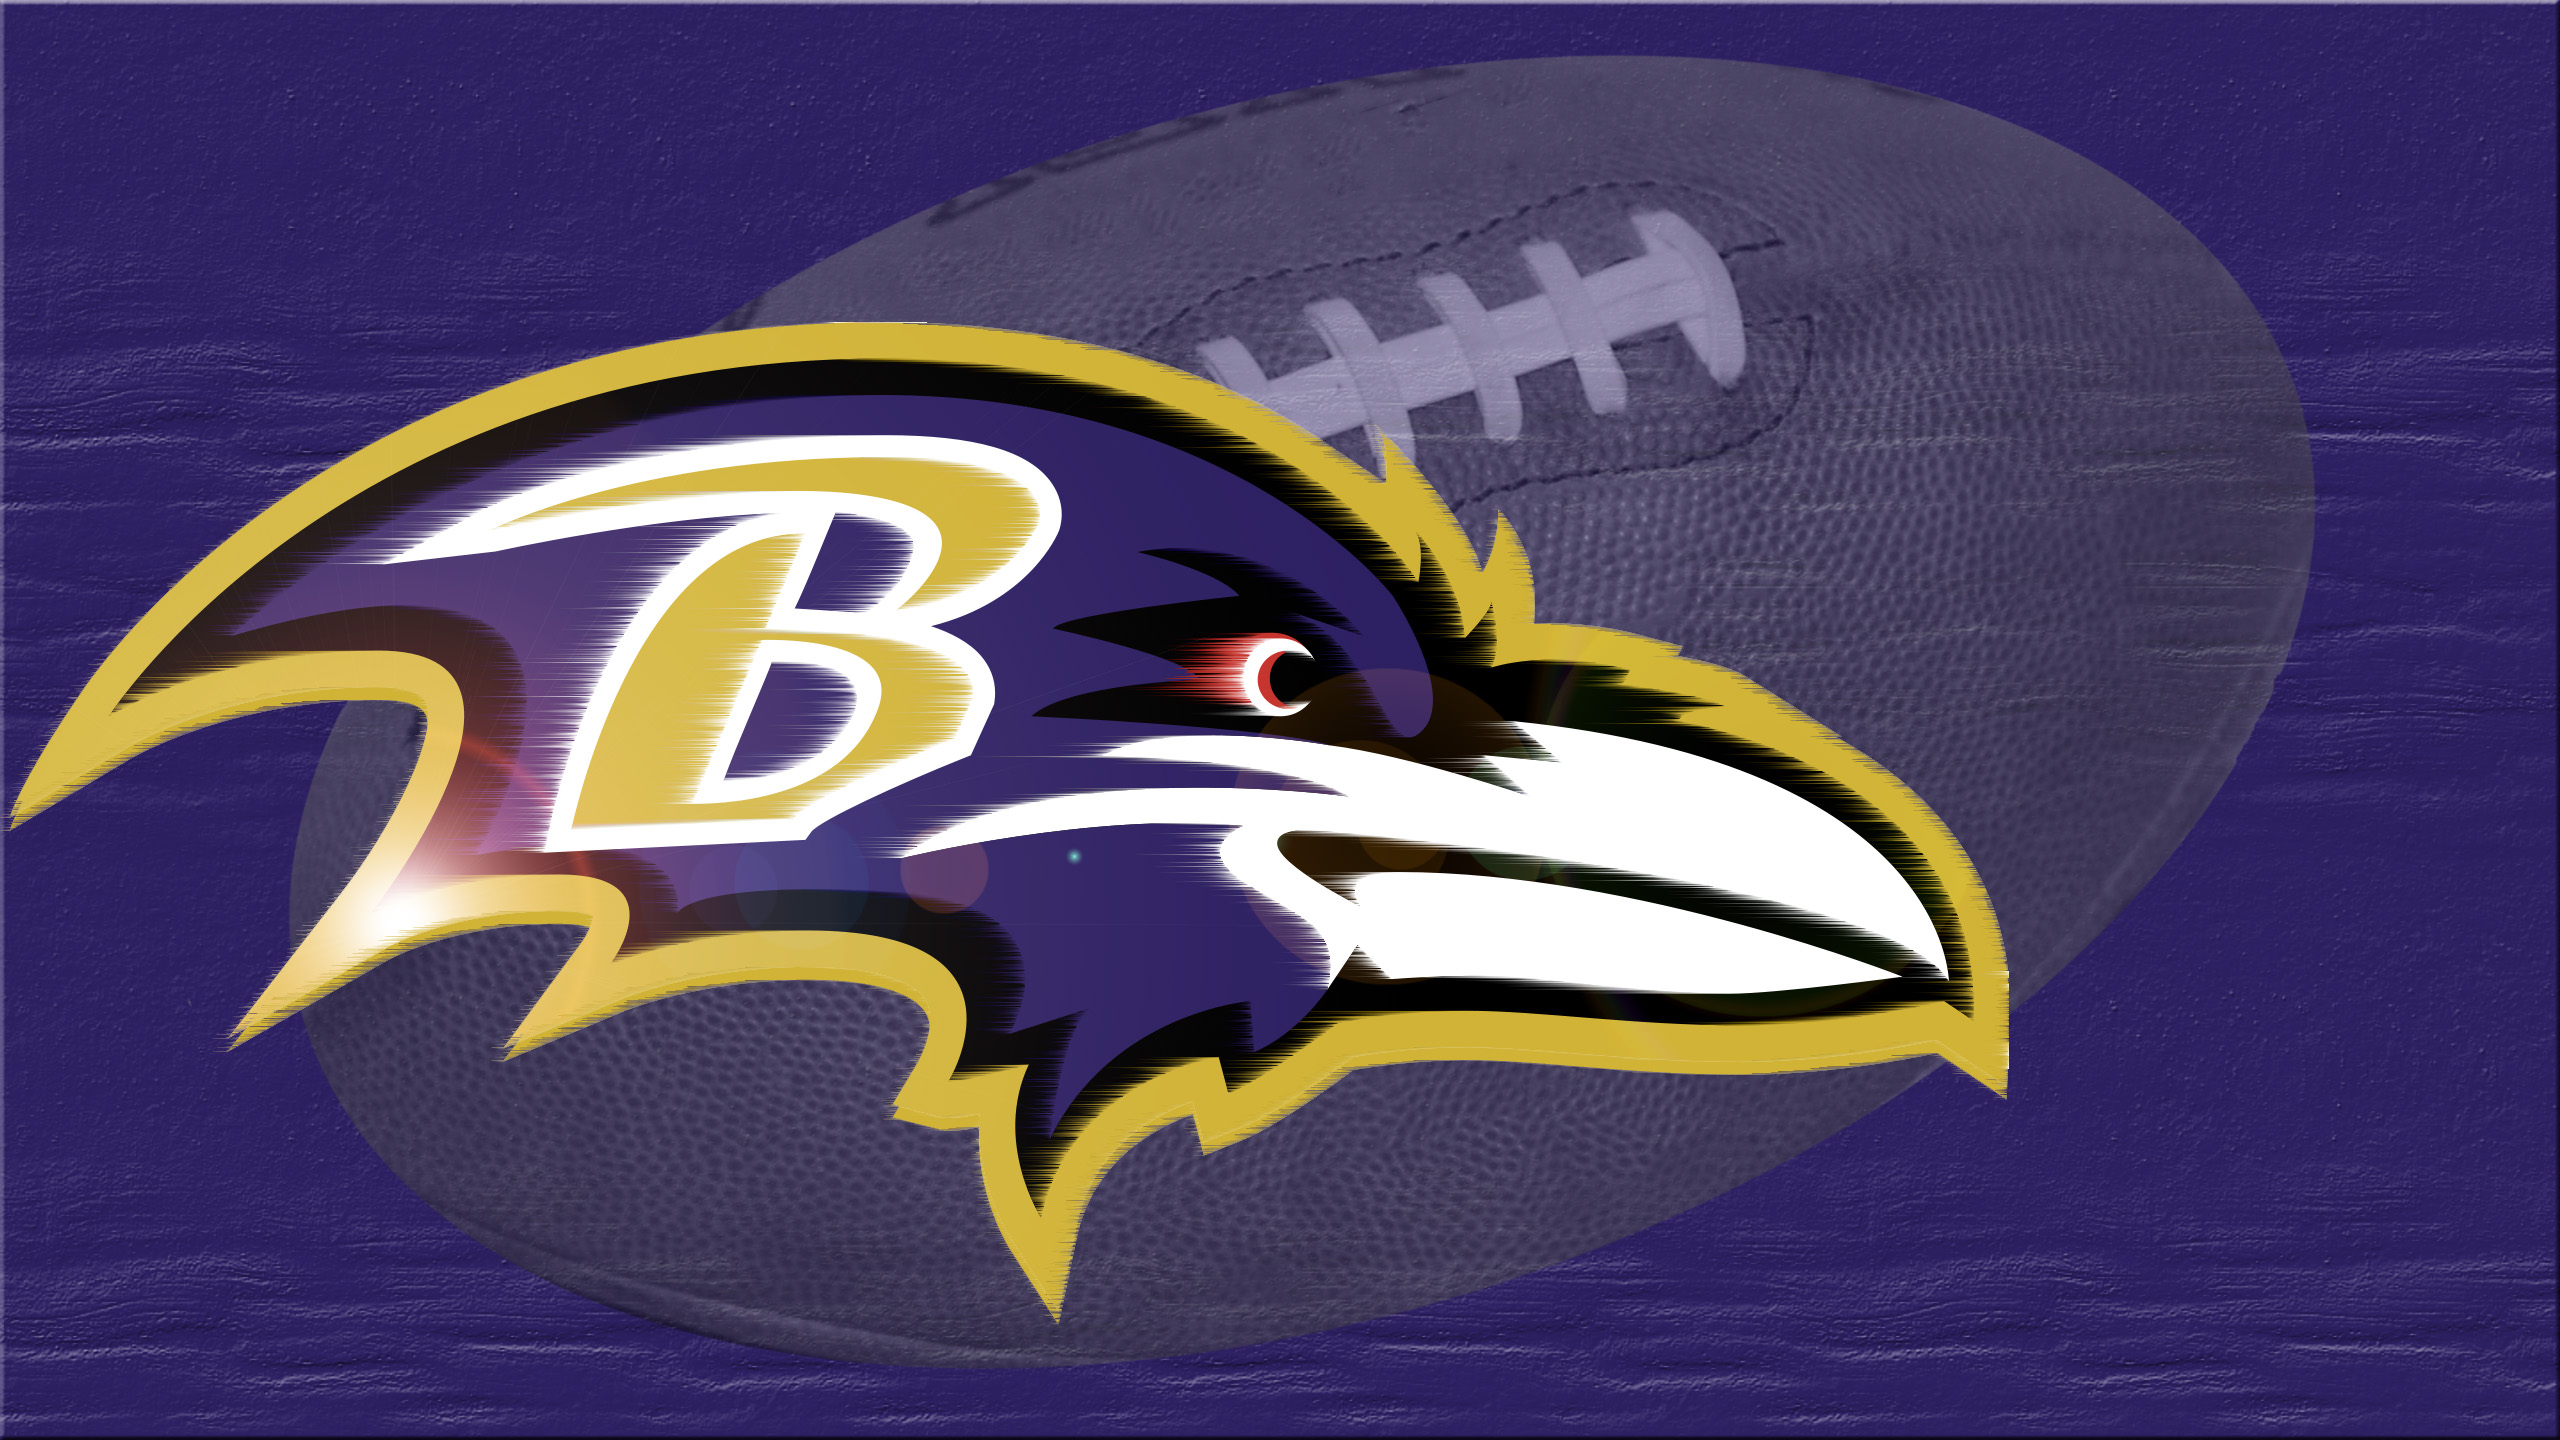 Baltimore Ravens and Orioles Wallpaper - WallpaperSafari